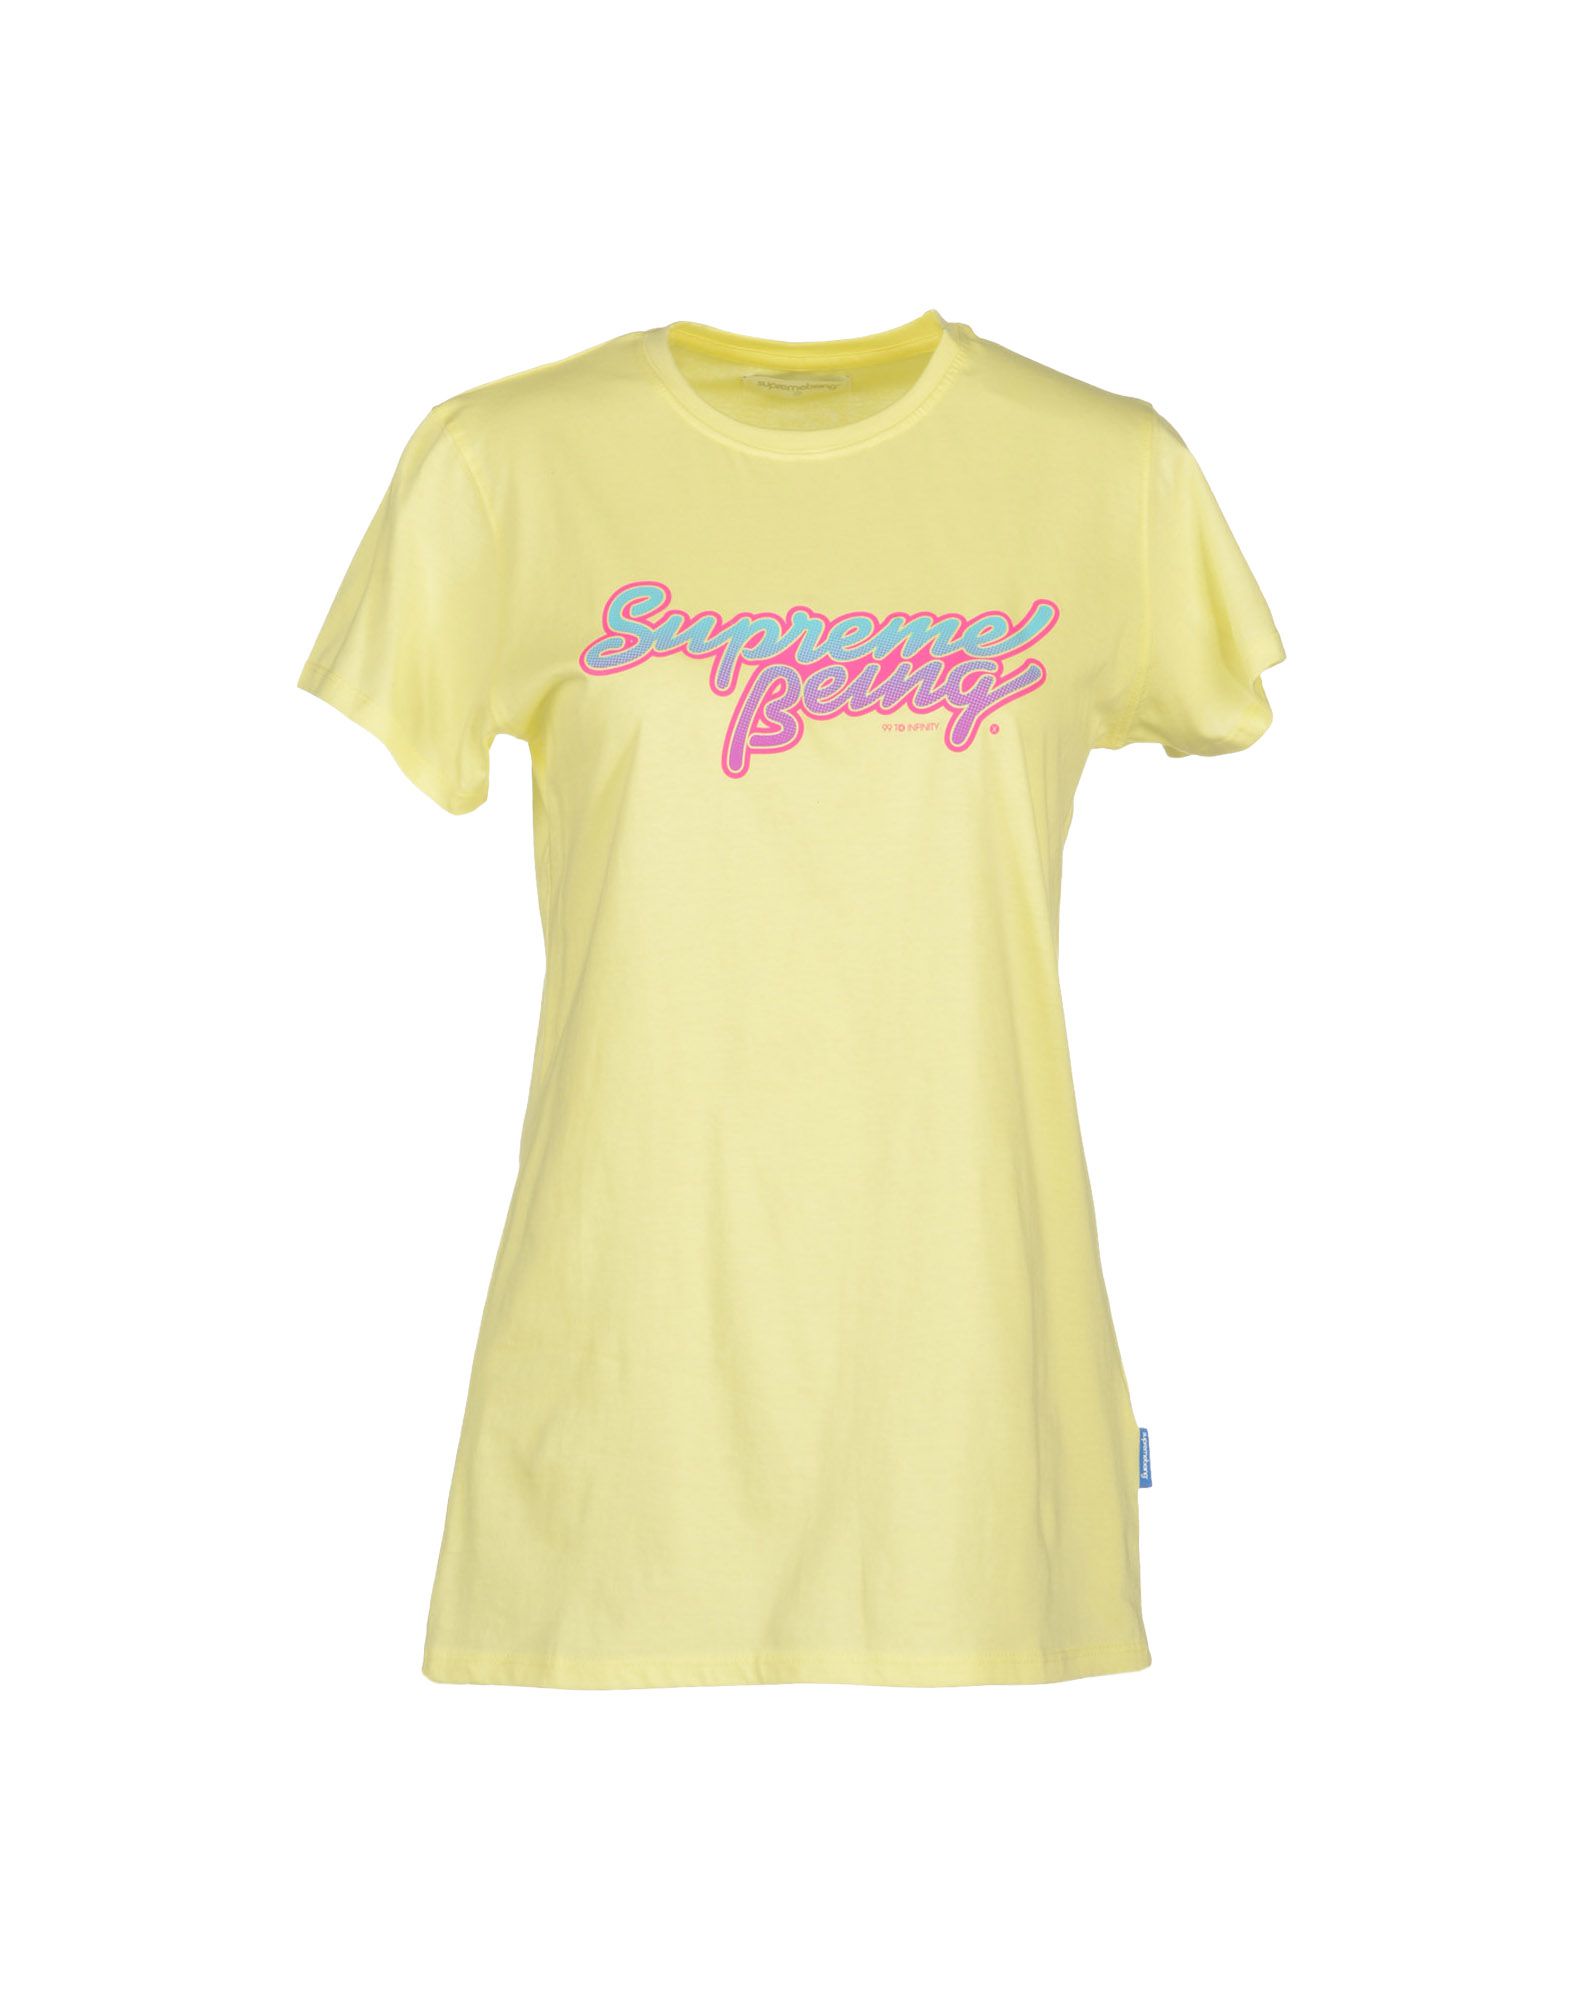 Foto Supreme Being Camisetas De Manga Corta Mujer Amarillo